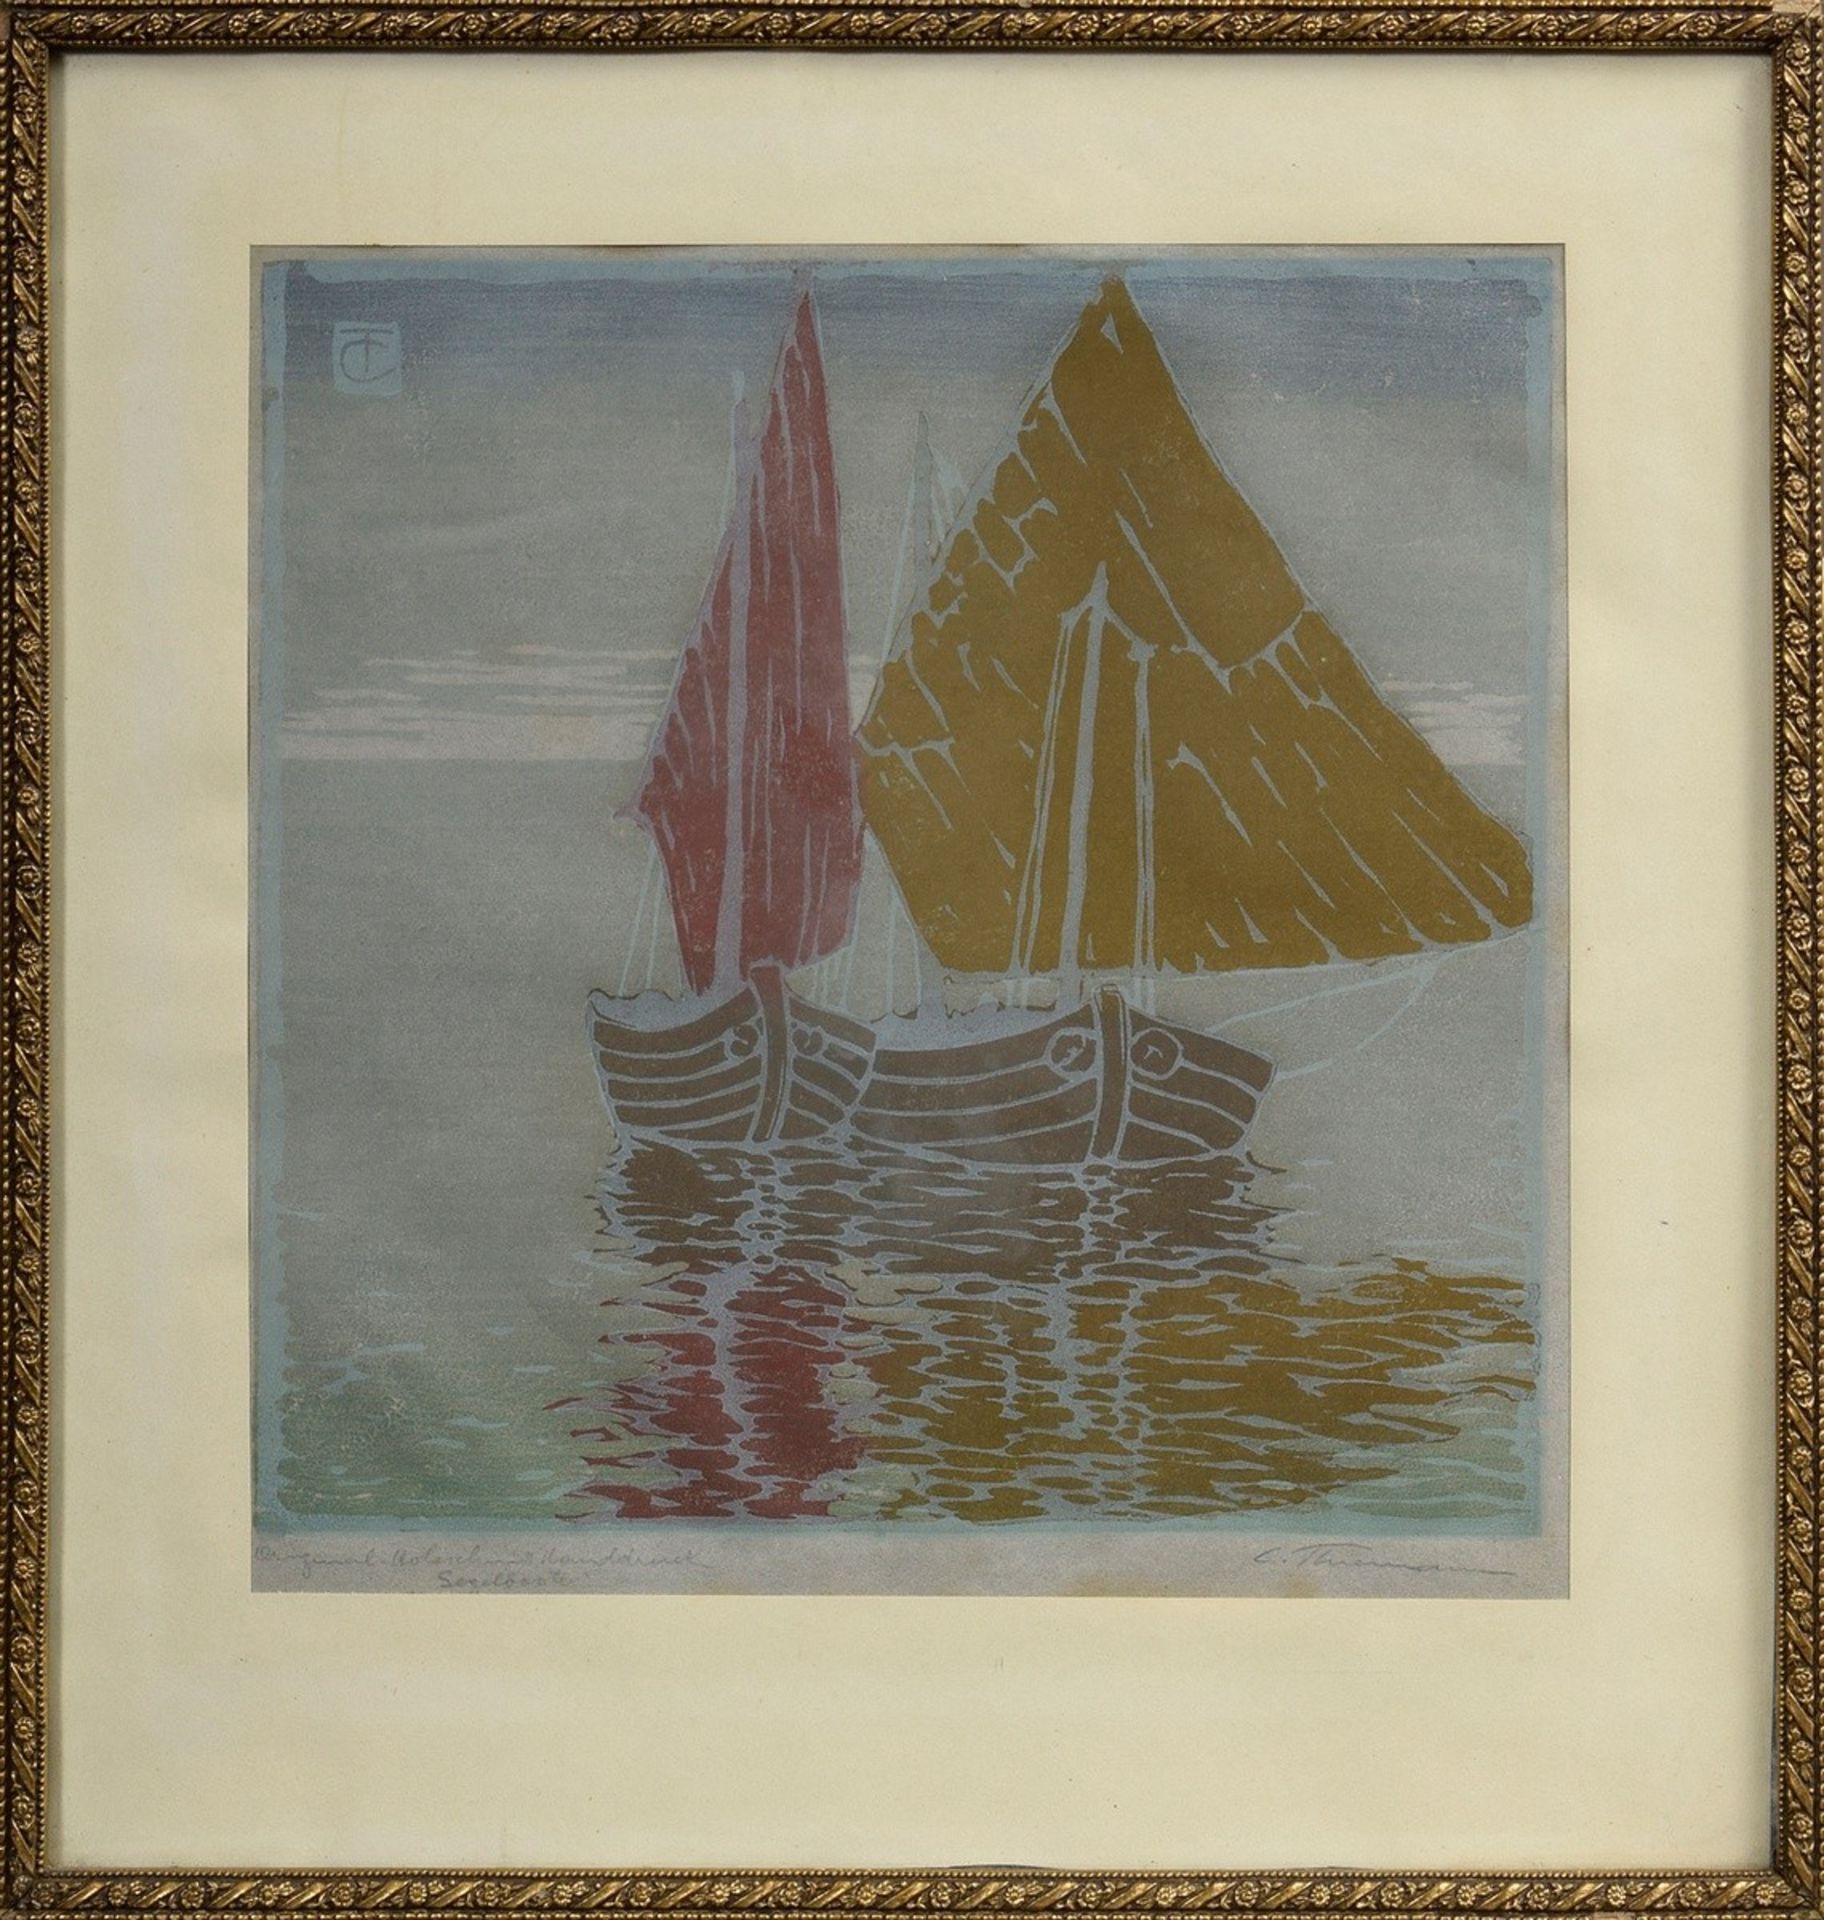 Thiemann, Carl Theodor (1881-1966) "Segelboote" | Thiemann, Carl Theodor (1881-1966) "Sailing Boat - Bild 2 aus 4